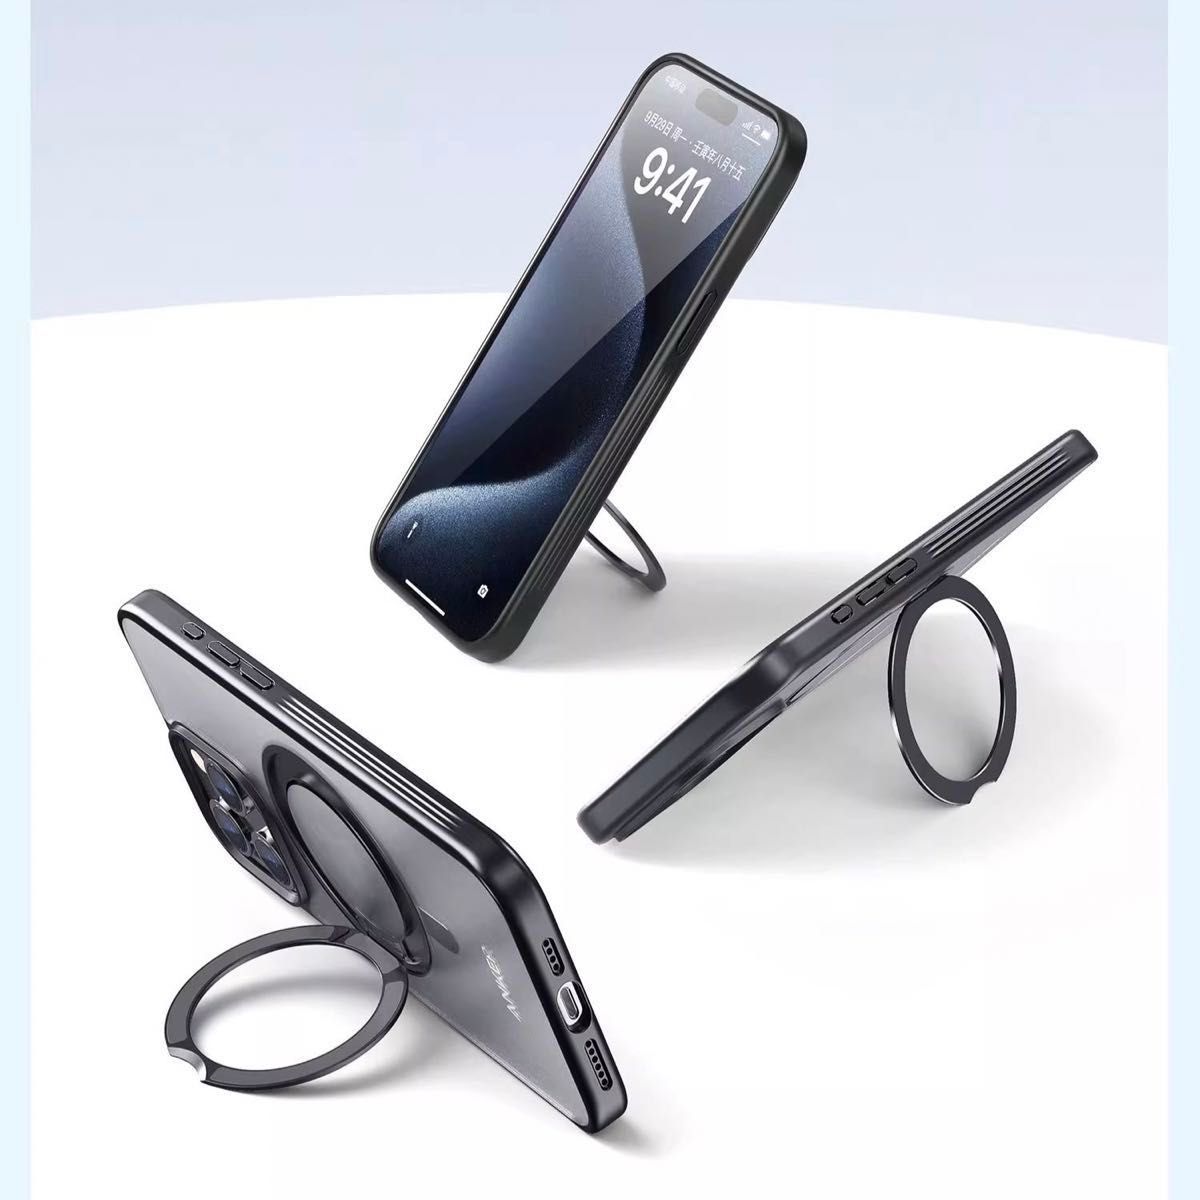 【新品未開封】Anker iphone15用 スタンド、リング、Magsafe充電対応ケース